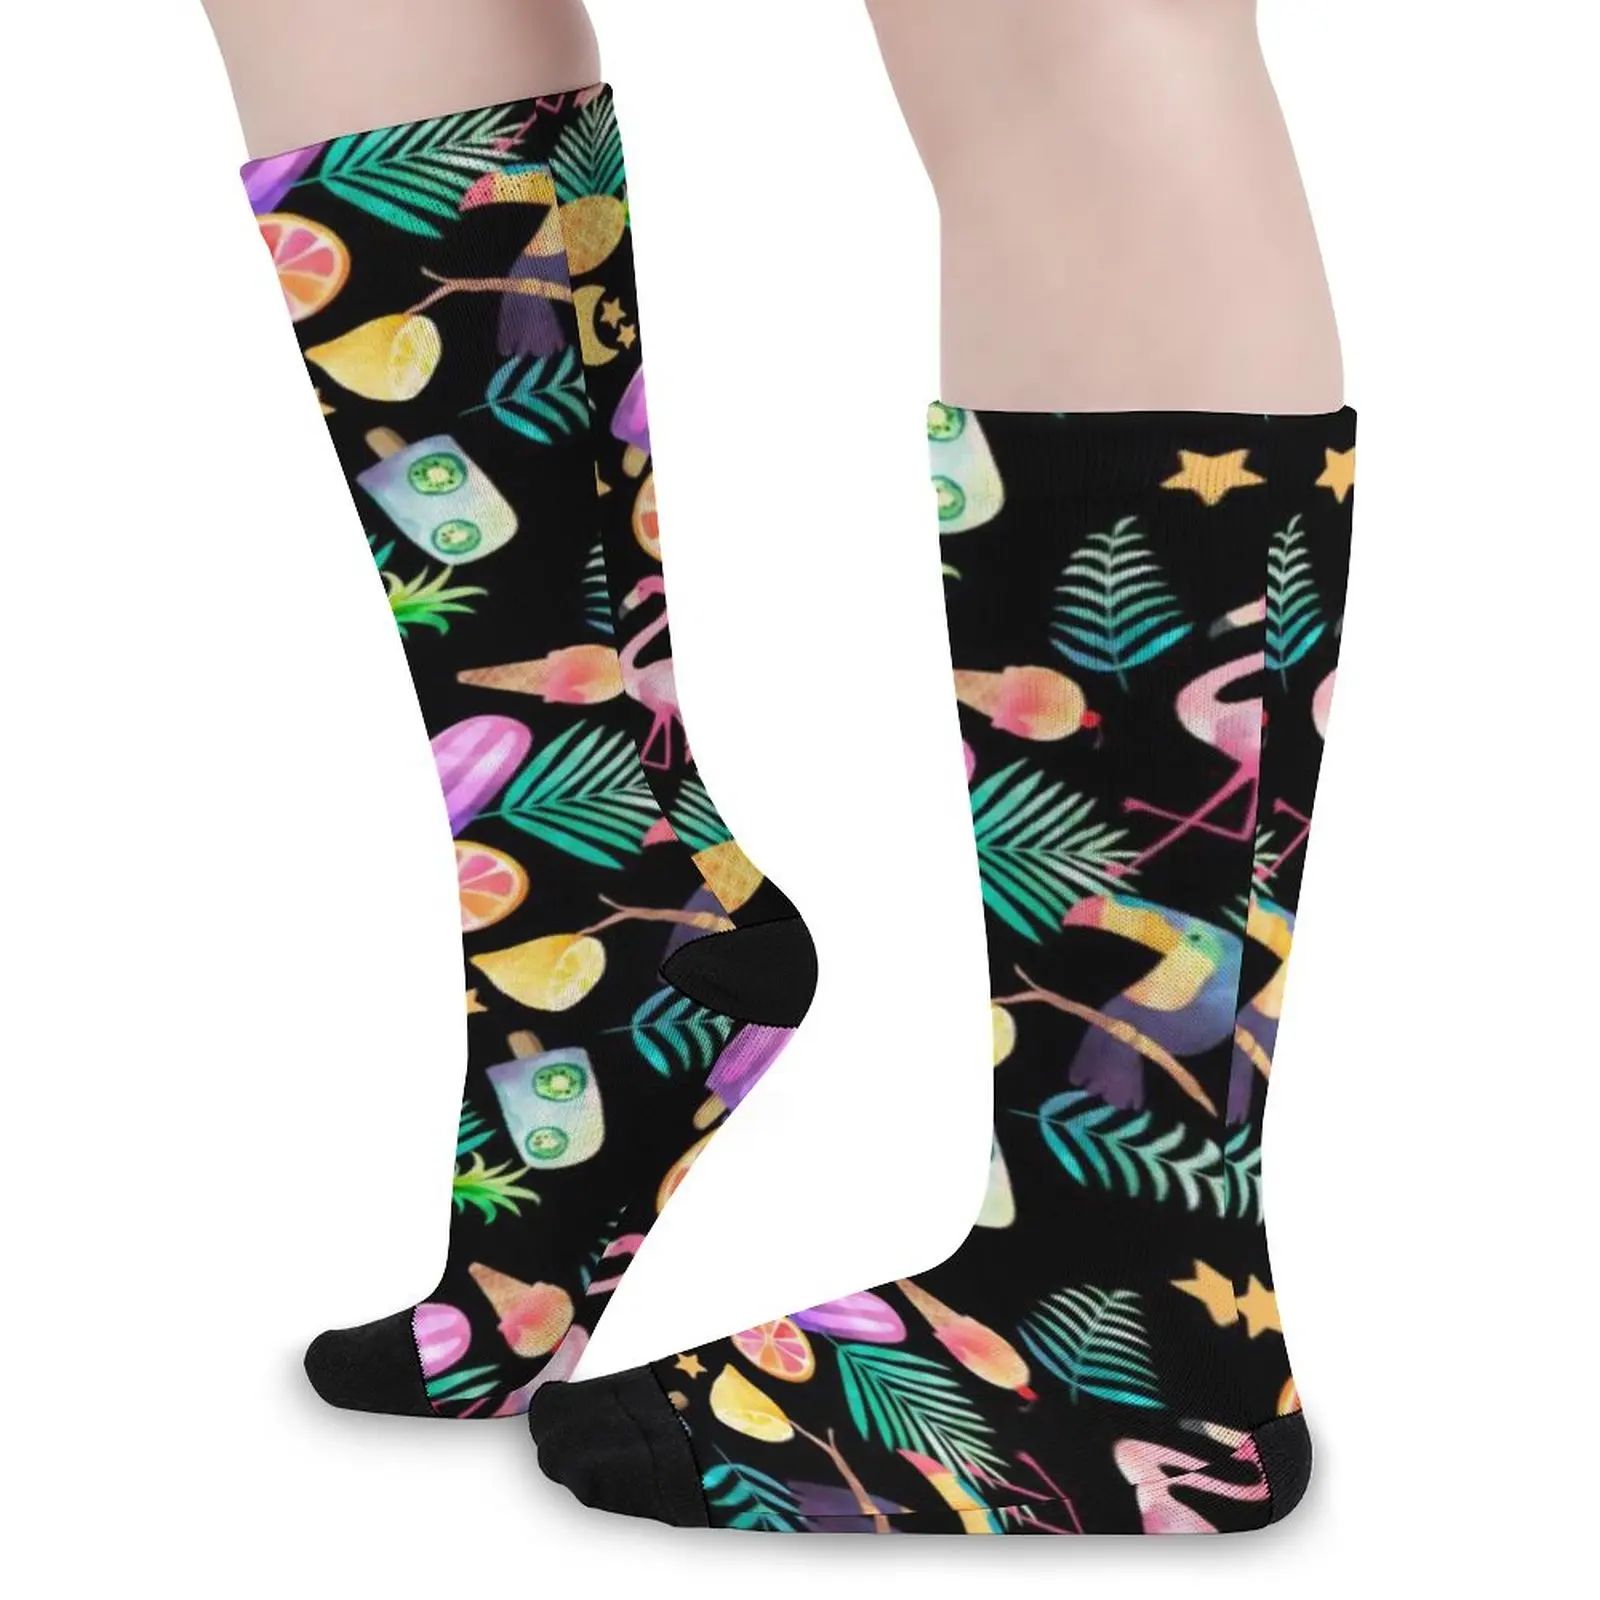 

Носки с рисунком мороженого, цветные Веселые тропические повседневные чулки, Осенние нескользящие носки унисекс, удобные носки с принтом для альпинизма